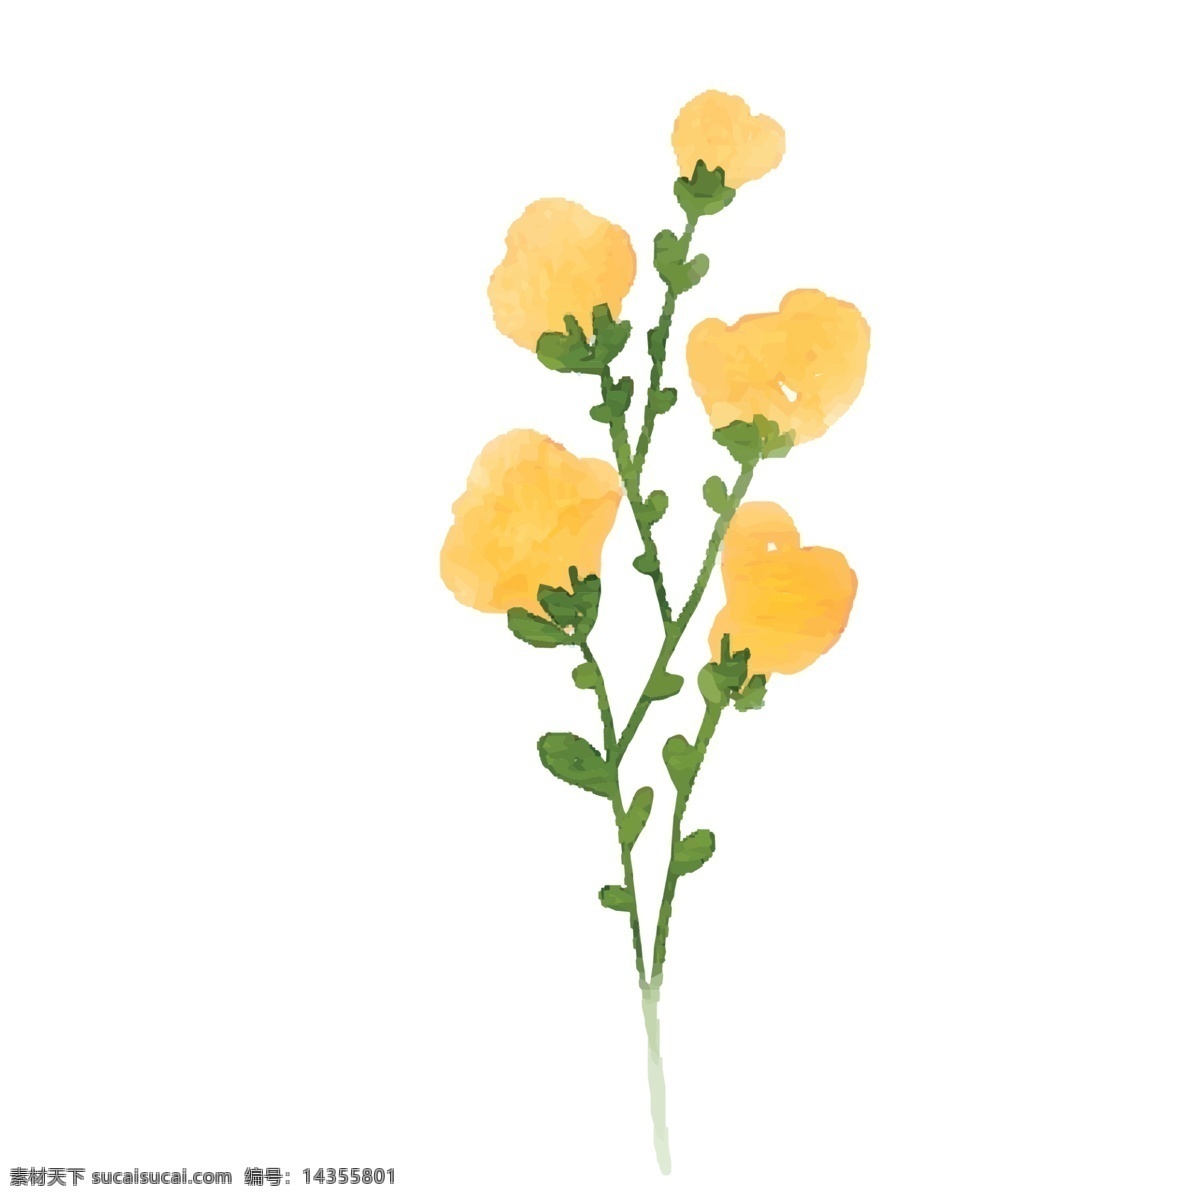 枝 黄色 手绘 花朵 树枝丫黄花 小 叶子 卡通手绘 卡通花朵 手绘卡通花朵 免抠下载 免抠黄色花朵